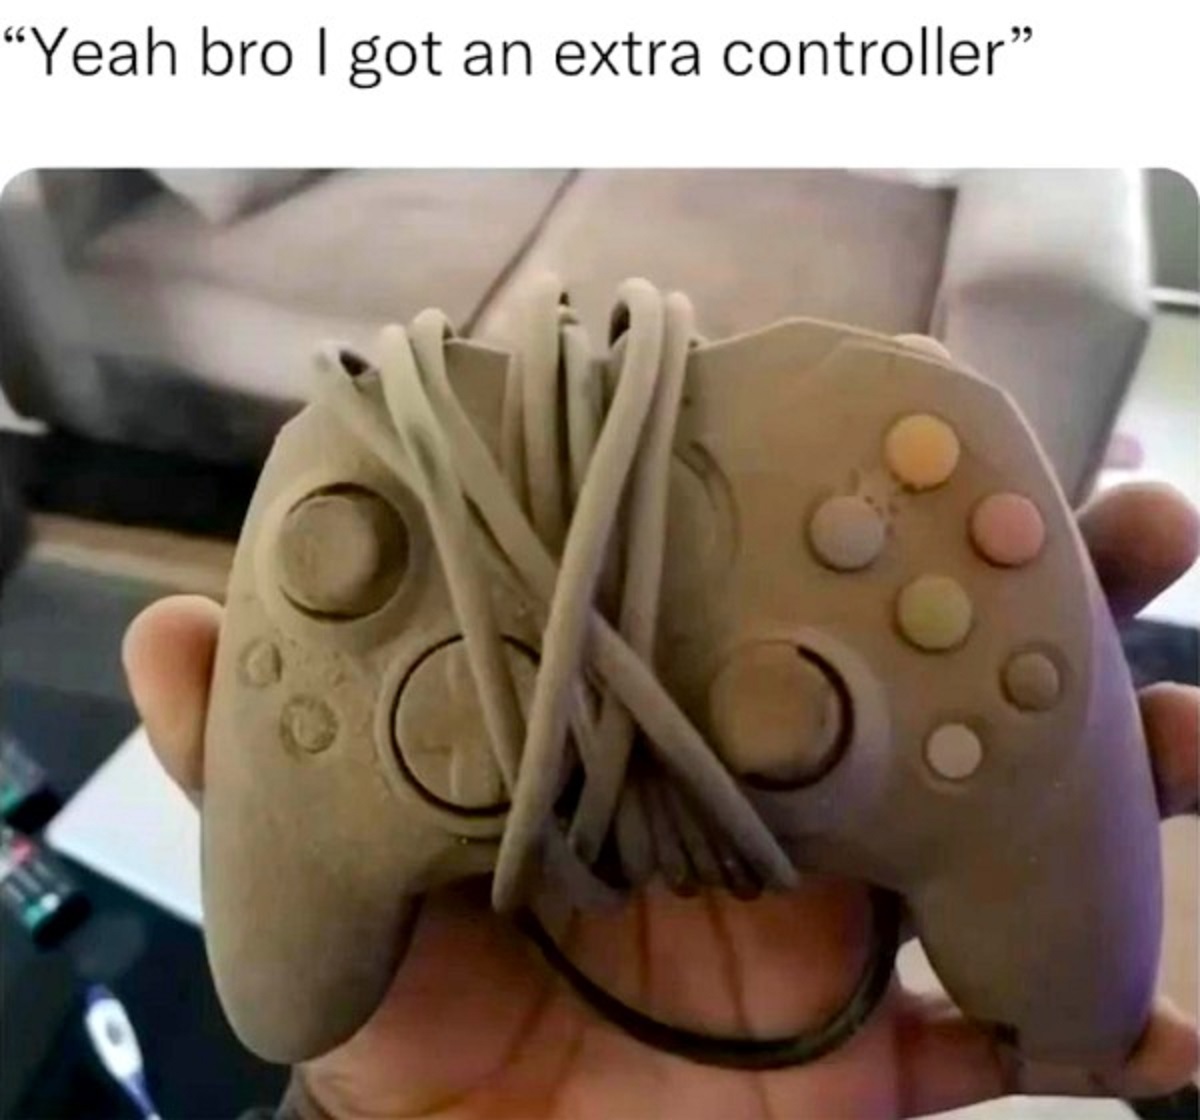 extra controller meme - "Yeah bro I got an extra controller"